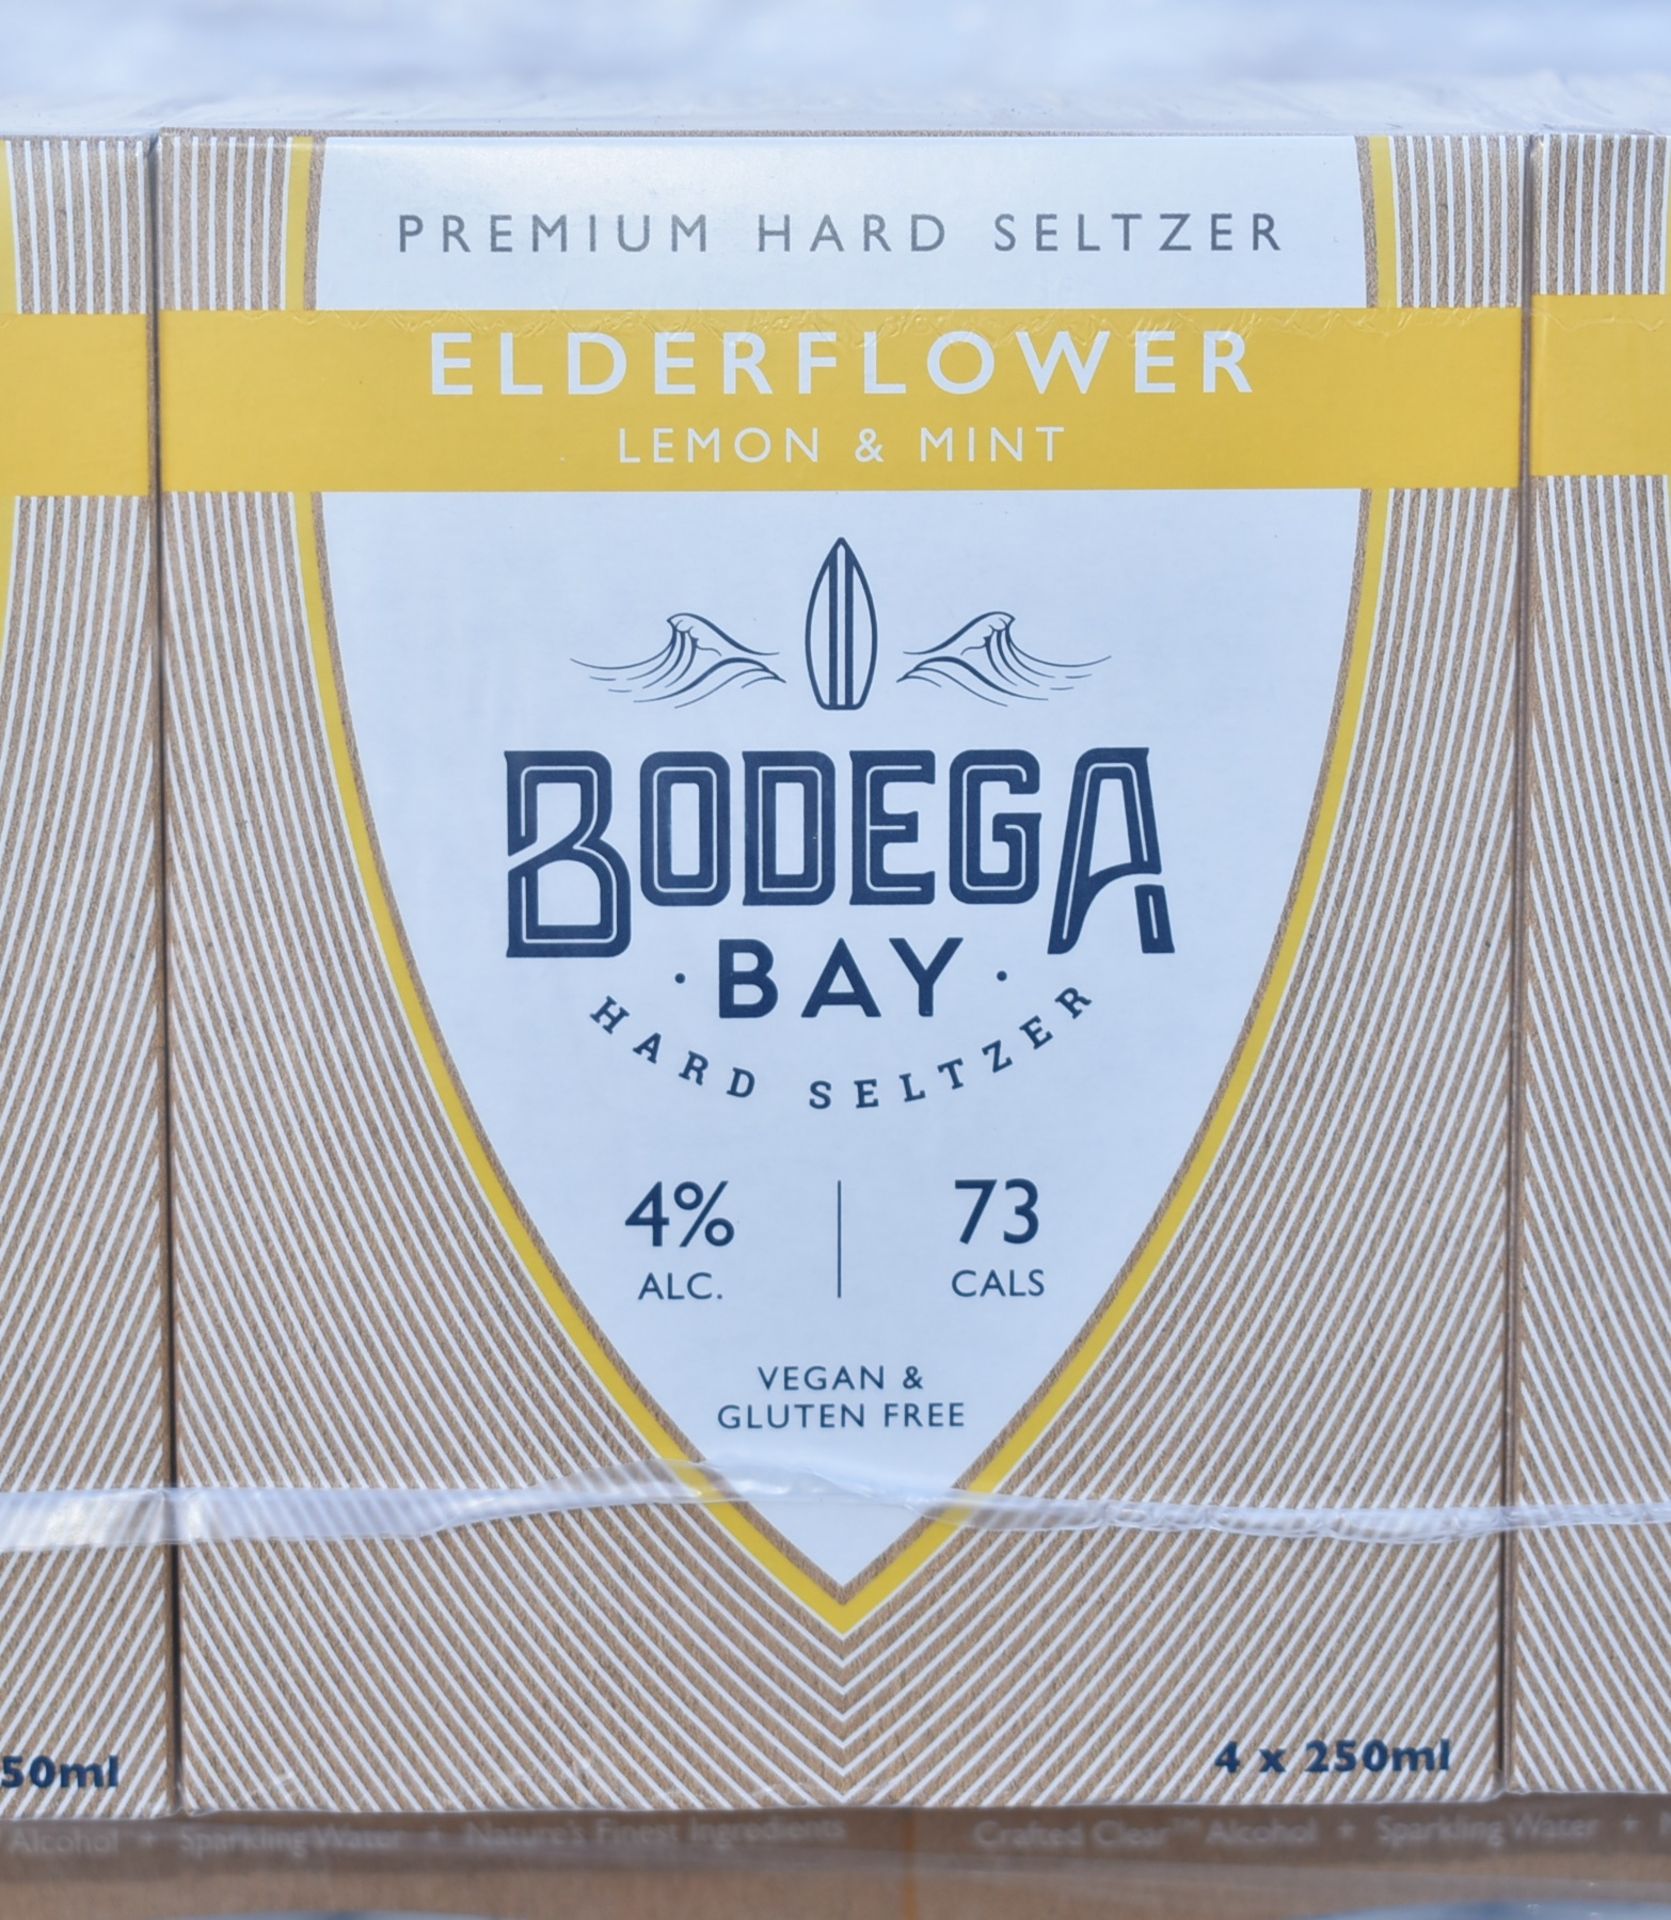 24 x Bodega Bay Hard Seltzer 250ml Alcoholic Sparkling Water Drinks - Elderflower Lemon & Mint - - Image 5 of 7